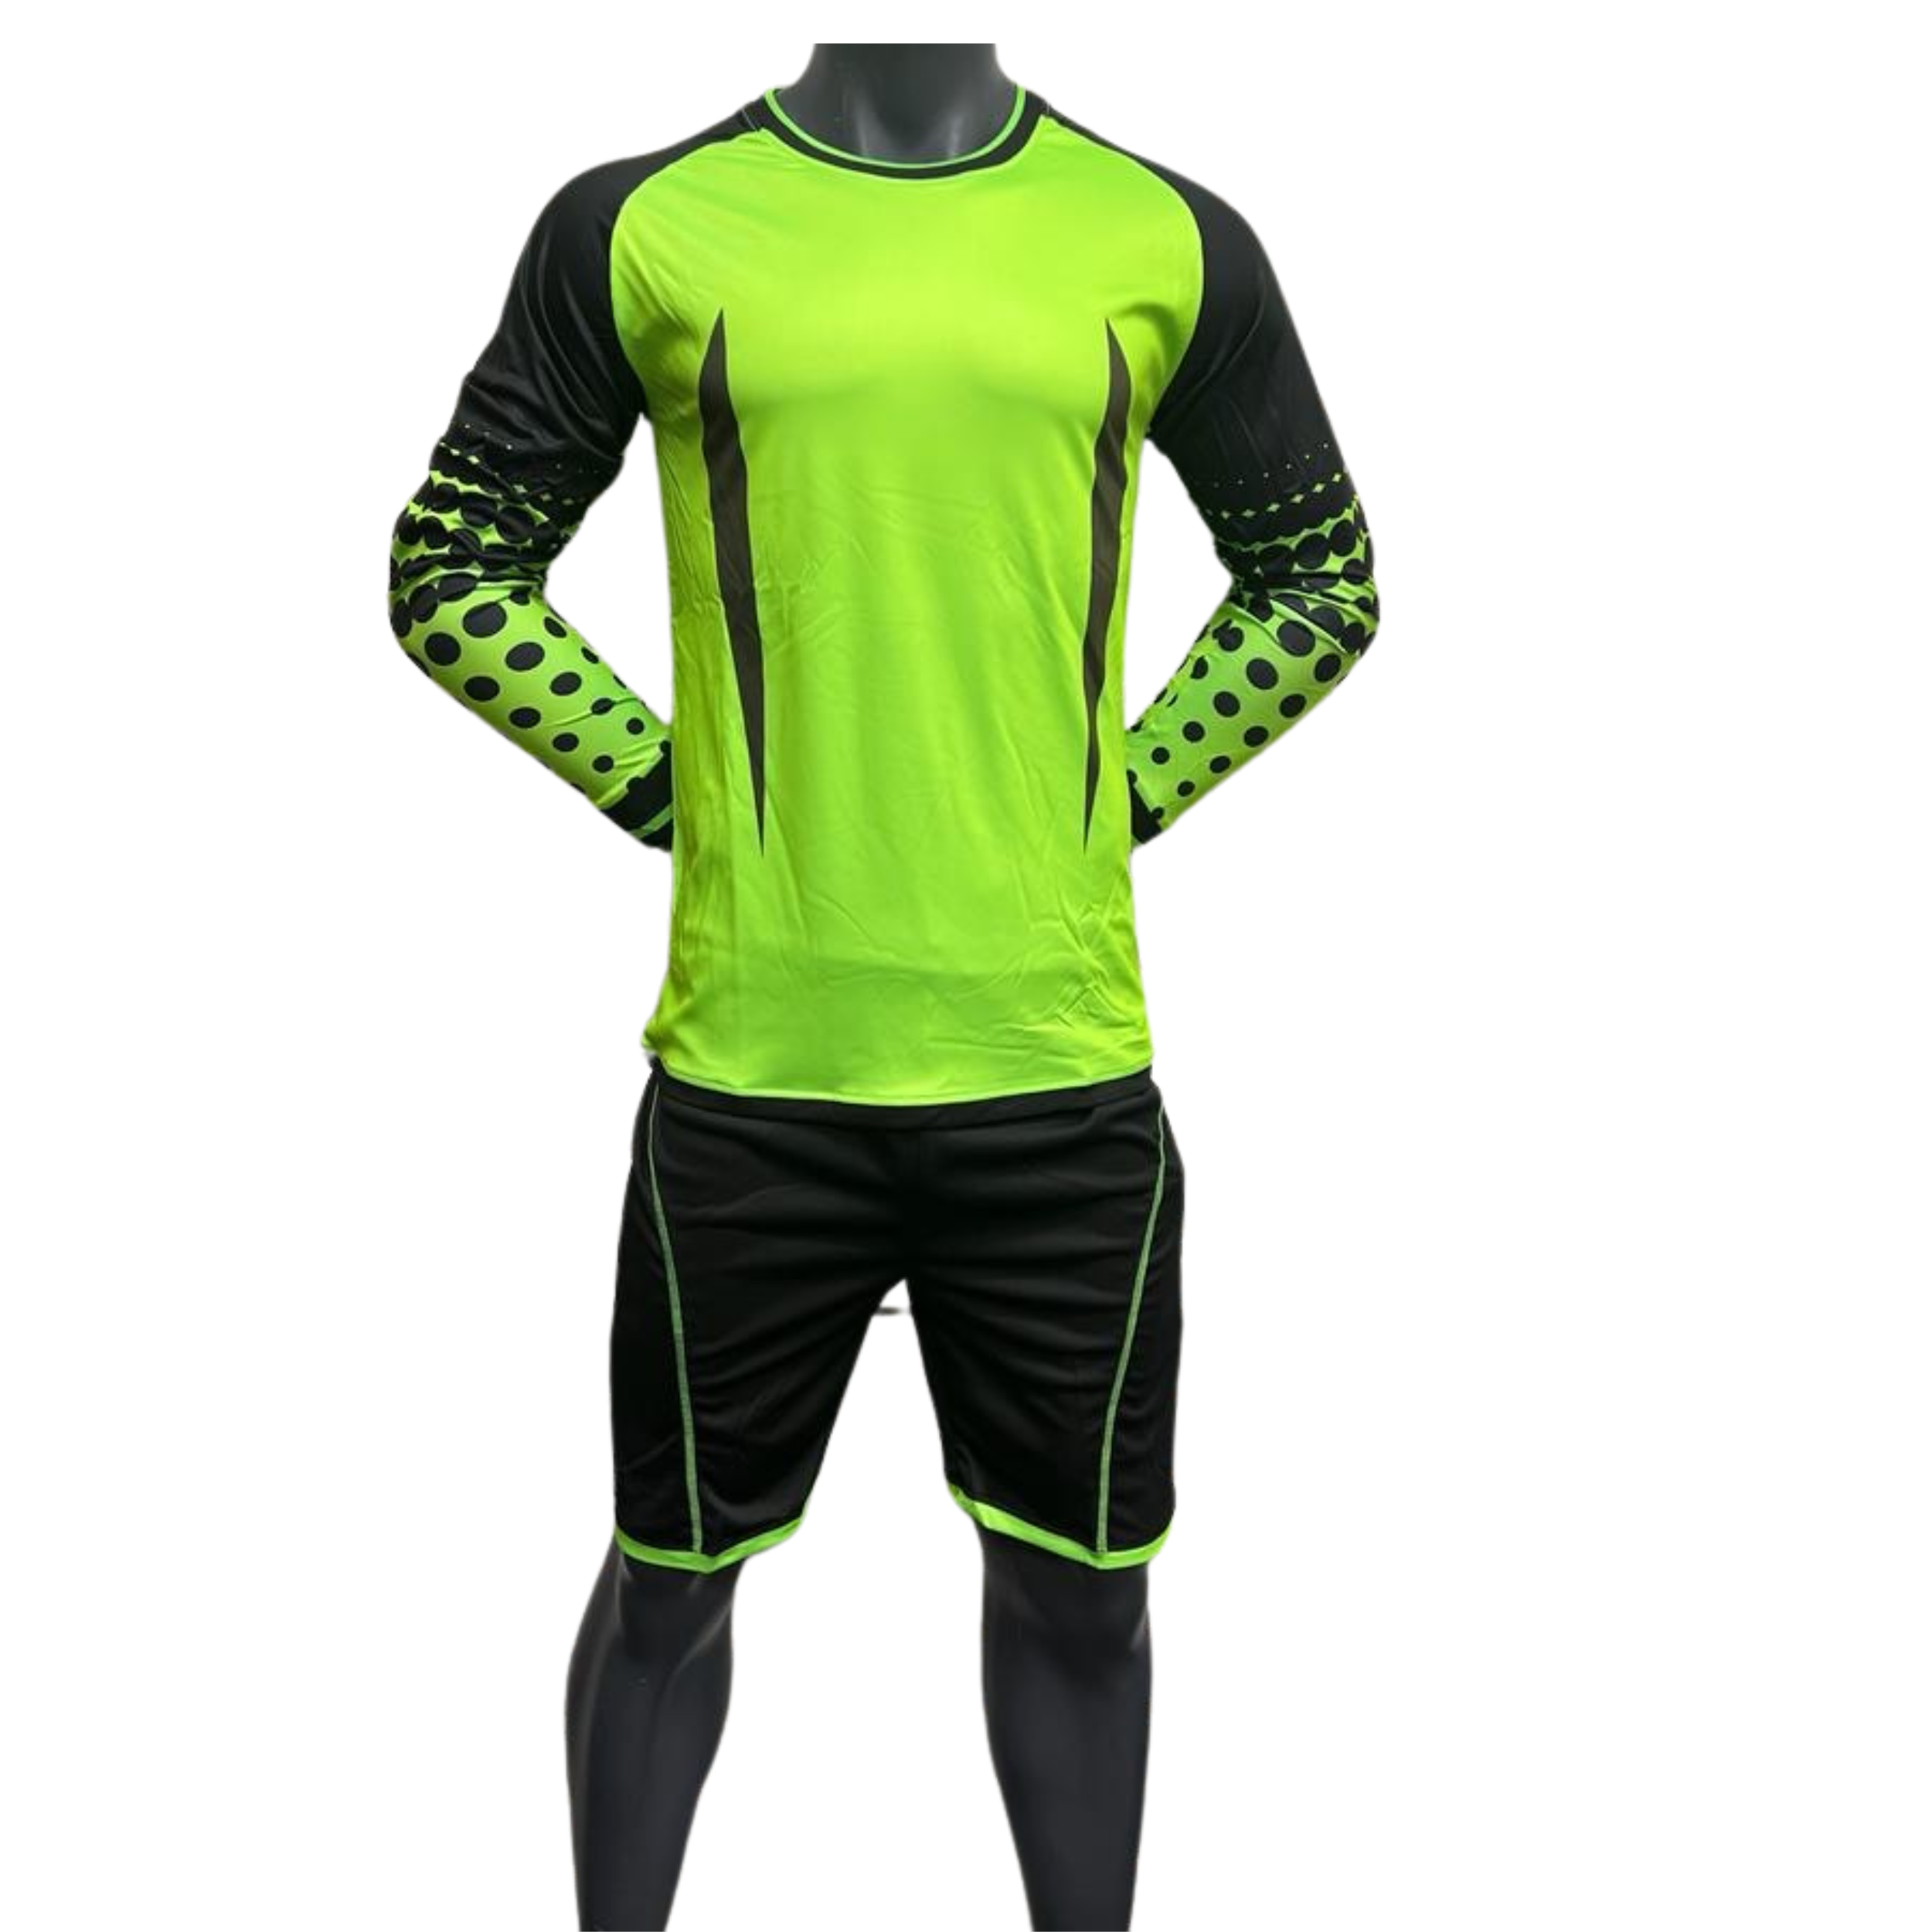 Green Goalkeeper Uniform